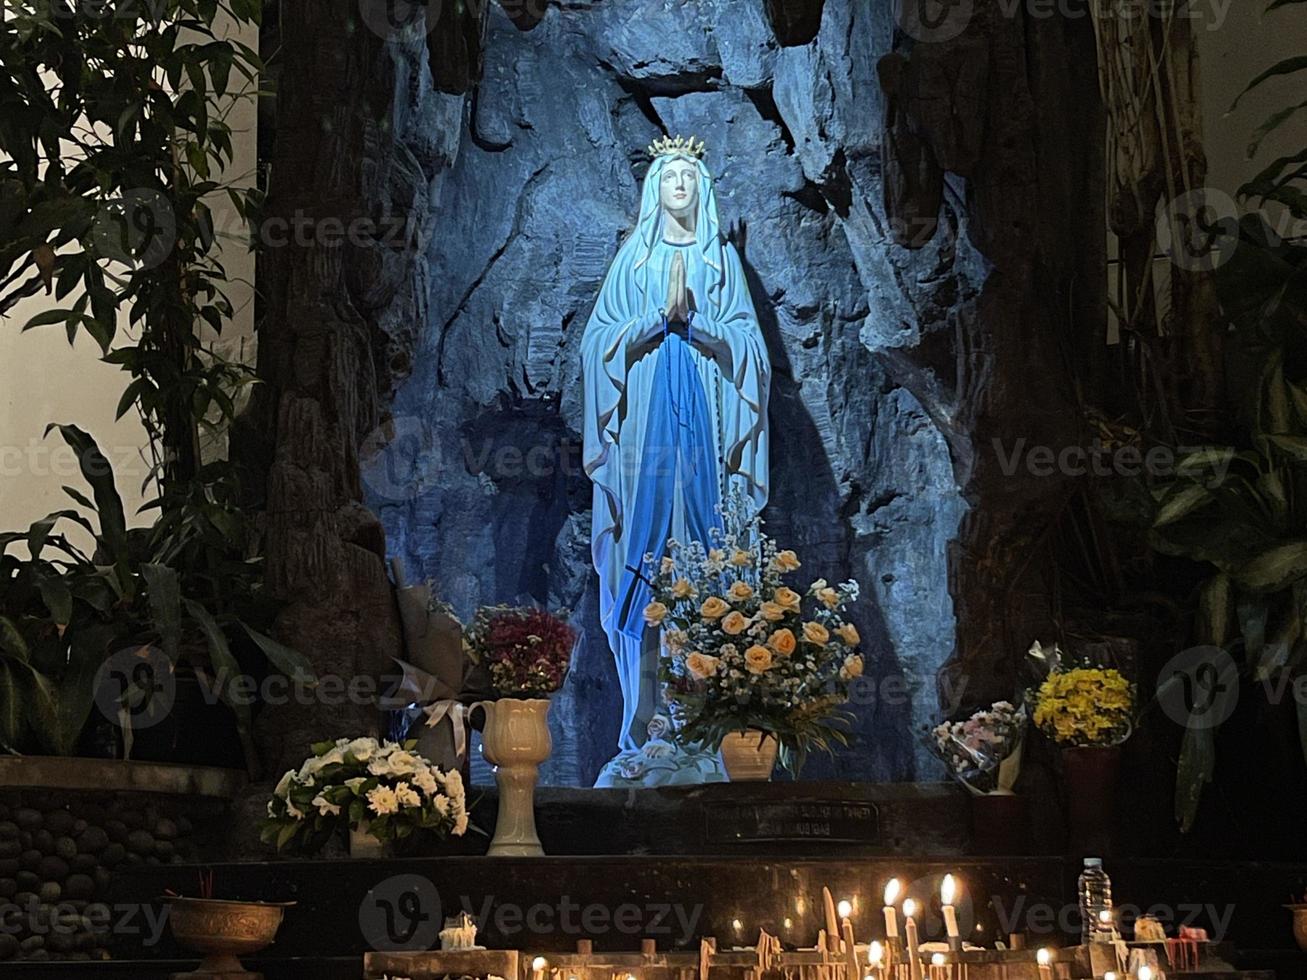 die höhle der jungfrau maria, statue der jungfrau maria in einer felshöhle kapelle katholische kirche mit tropischer vegetation foto